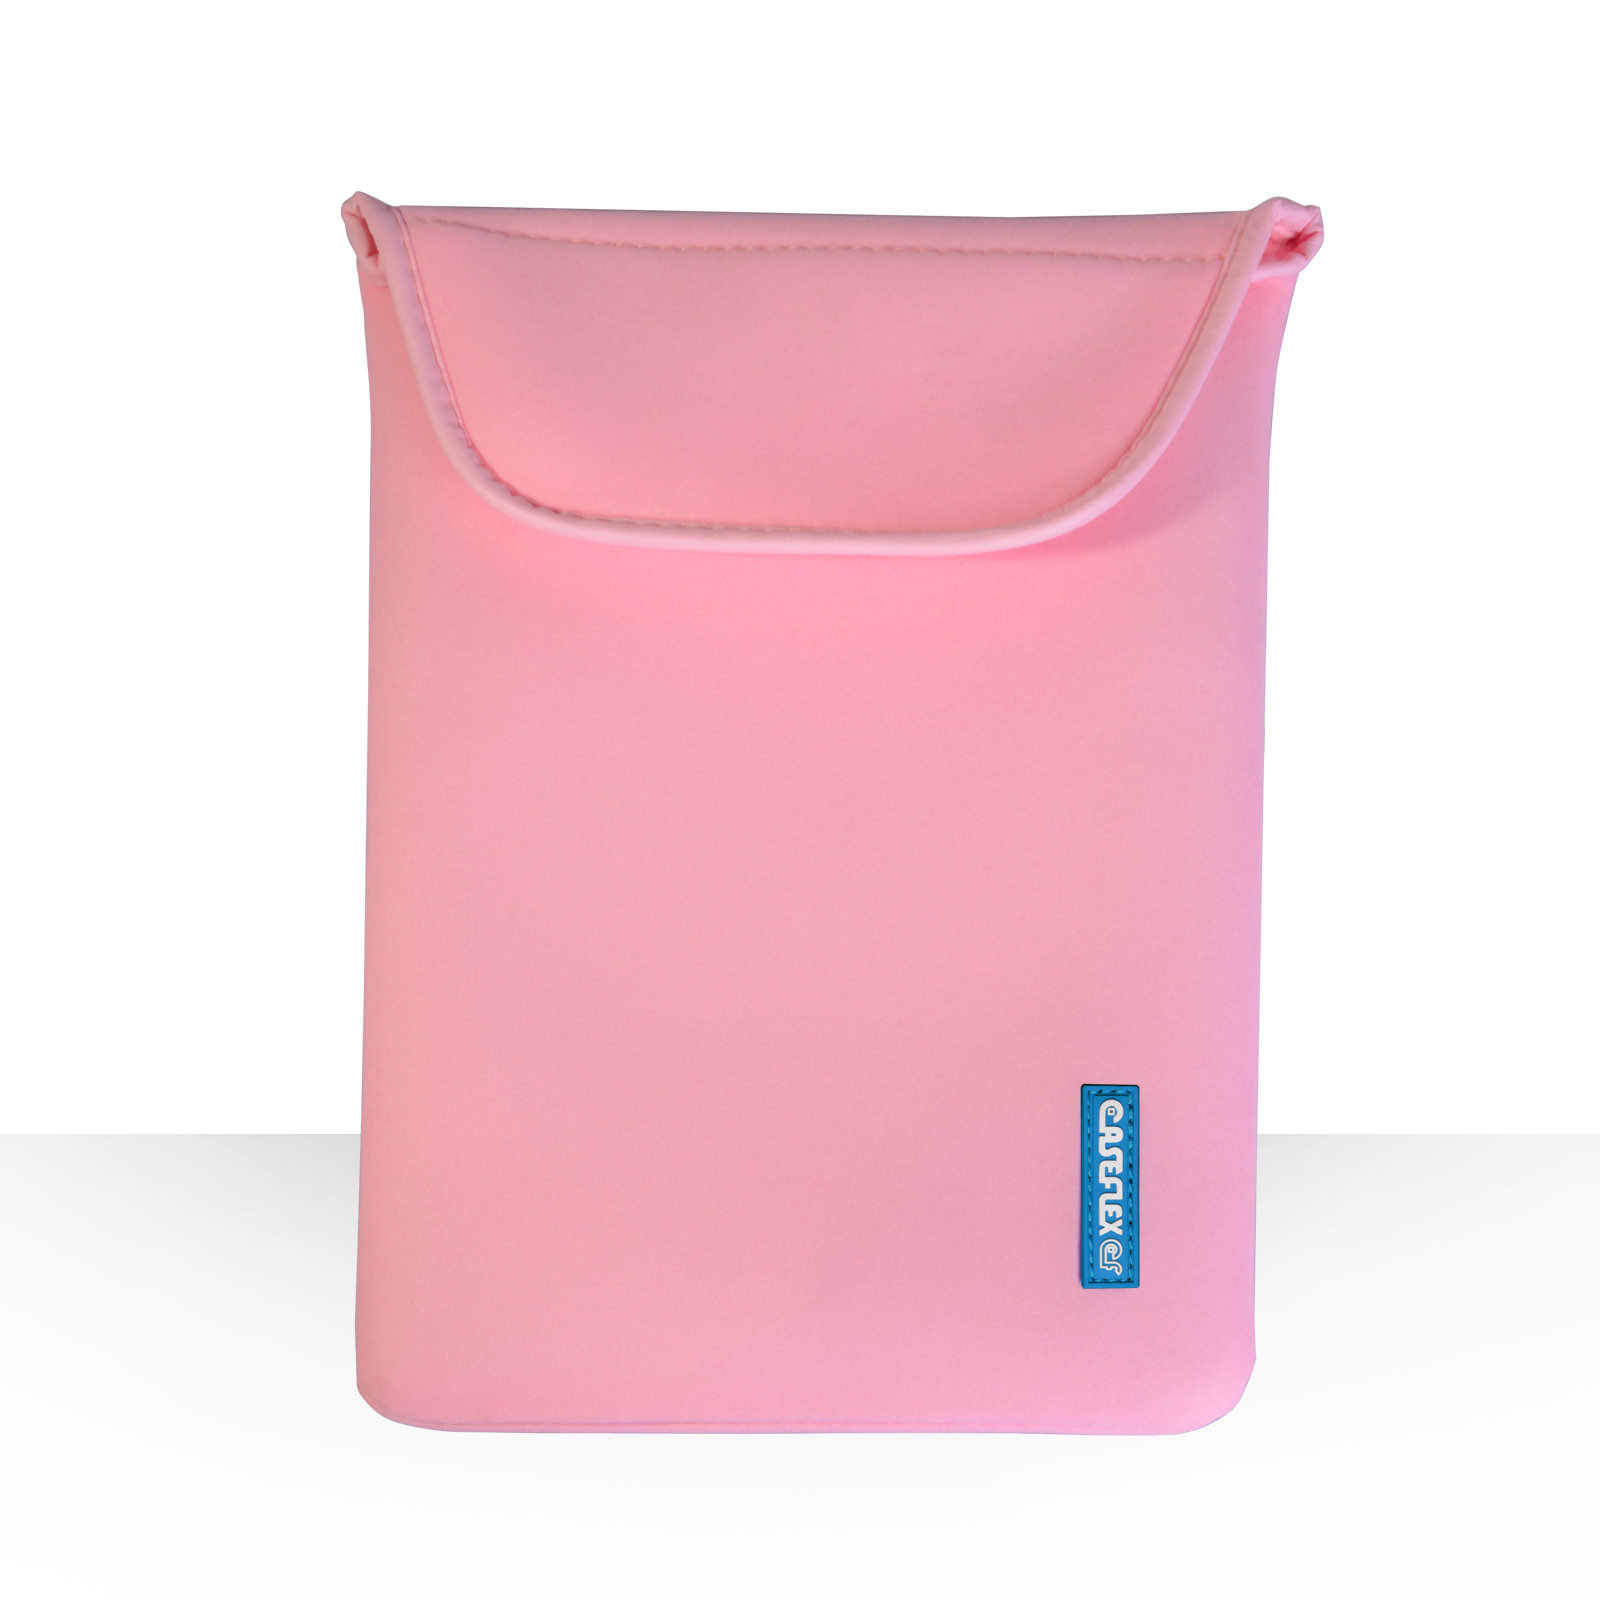 Caseflex 10 Inch Baby Pink Neoprene Tablet Pouch (M)